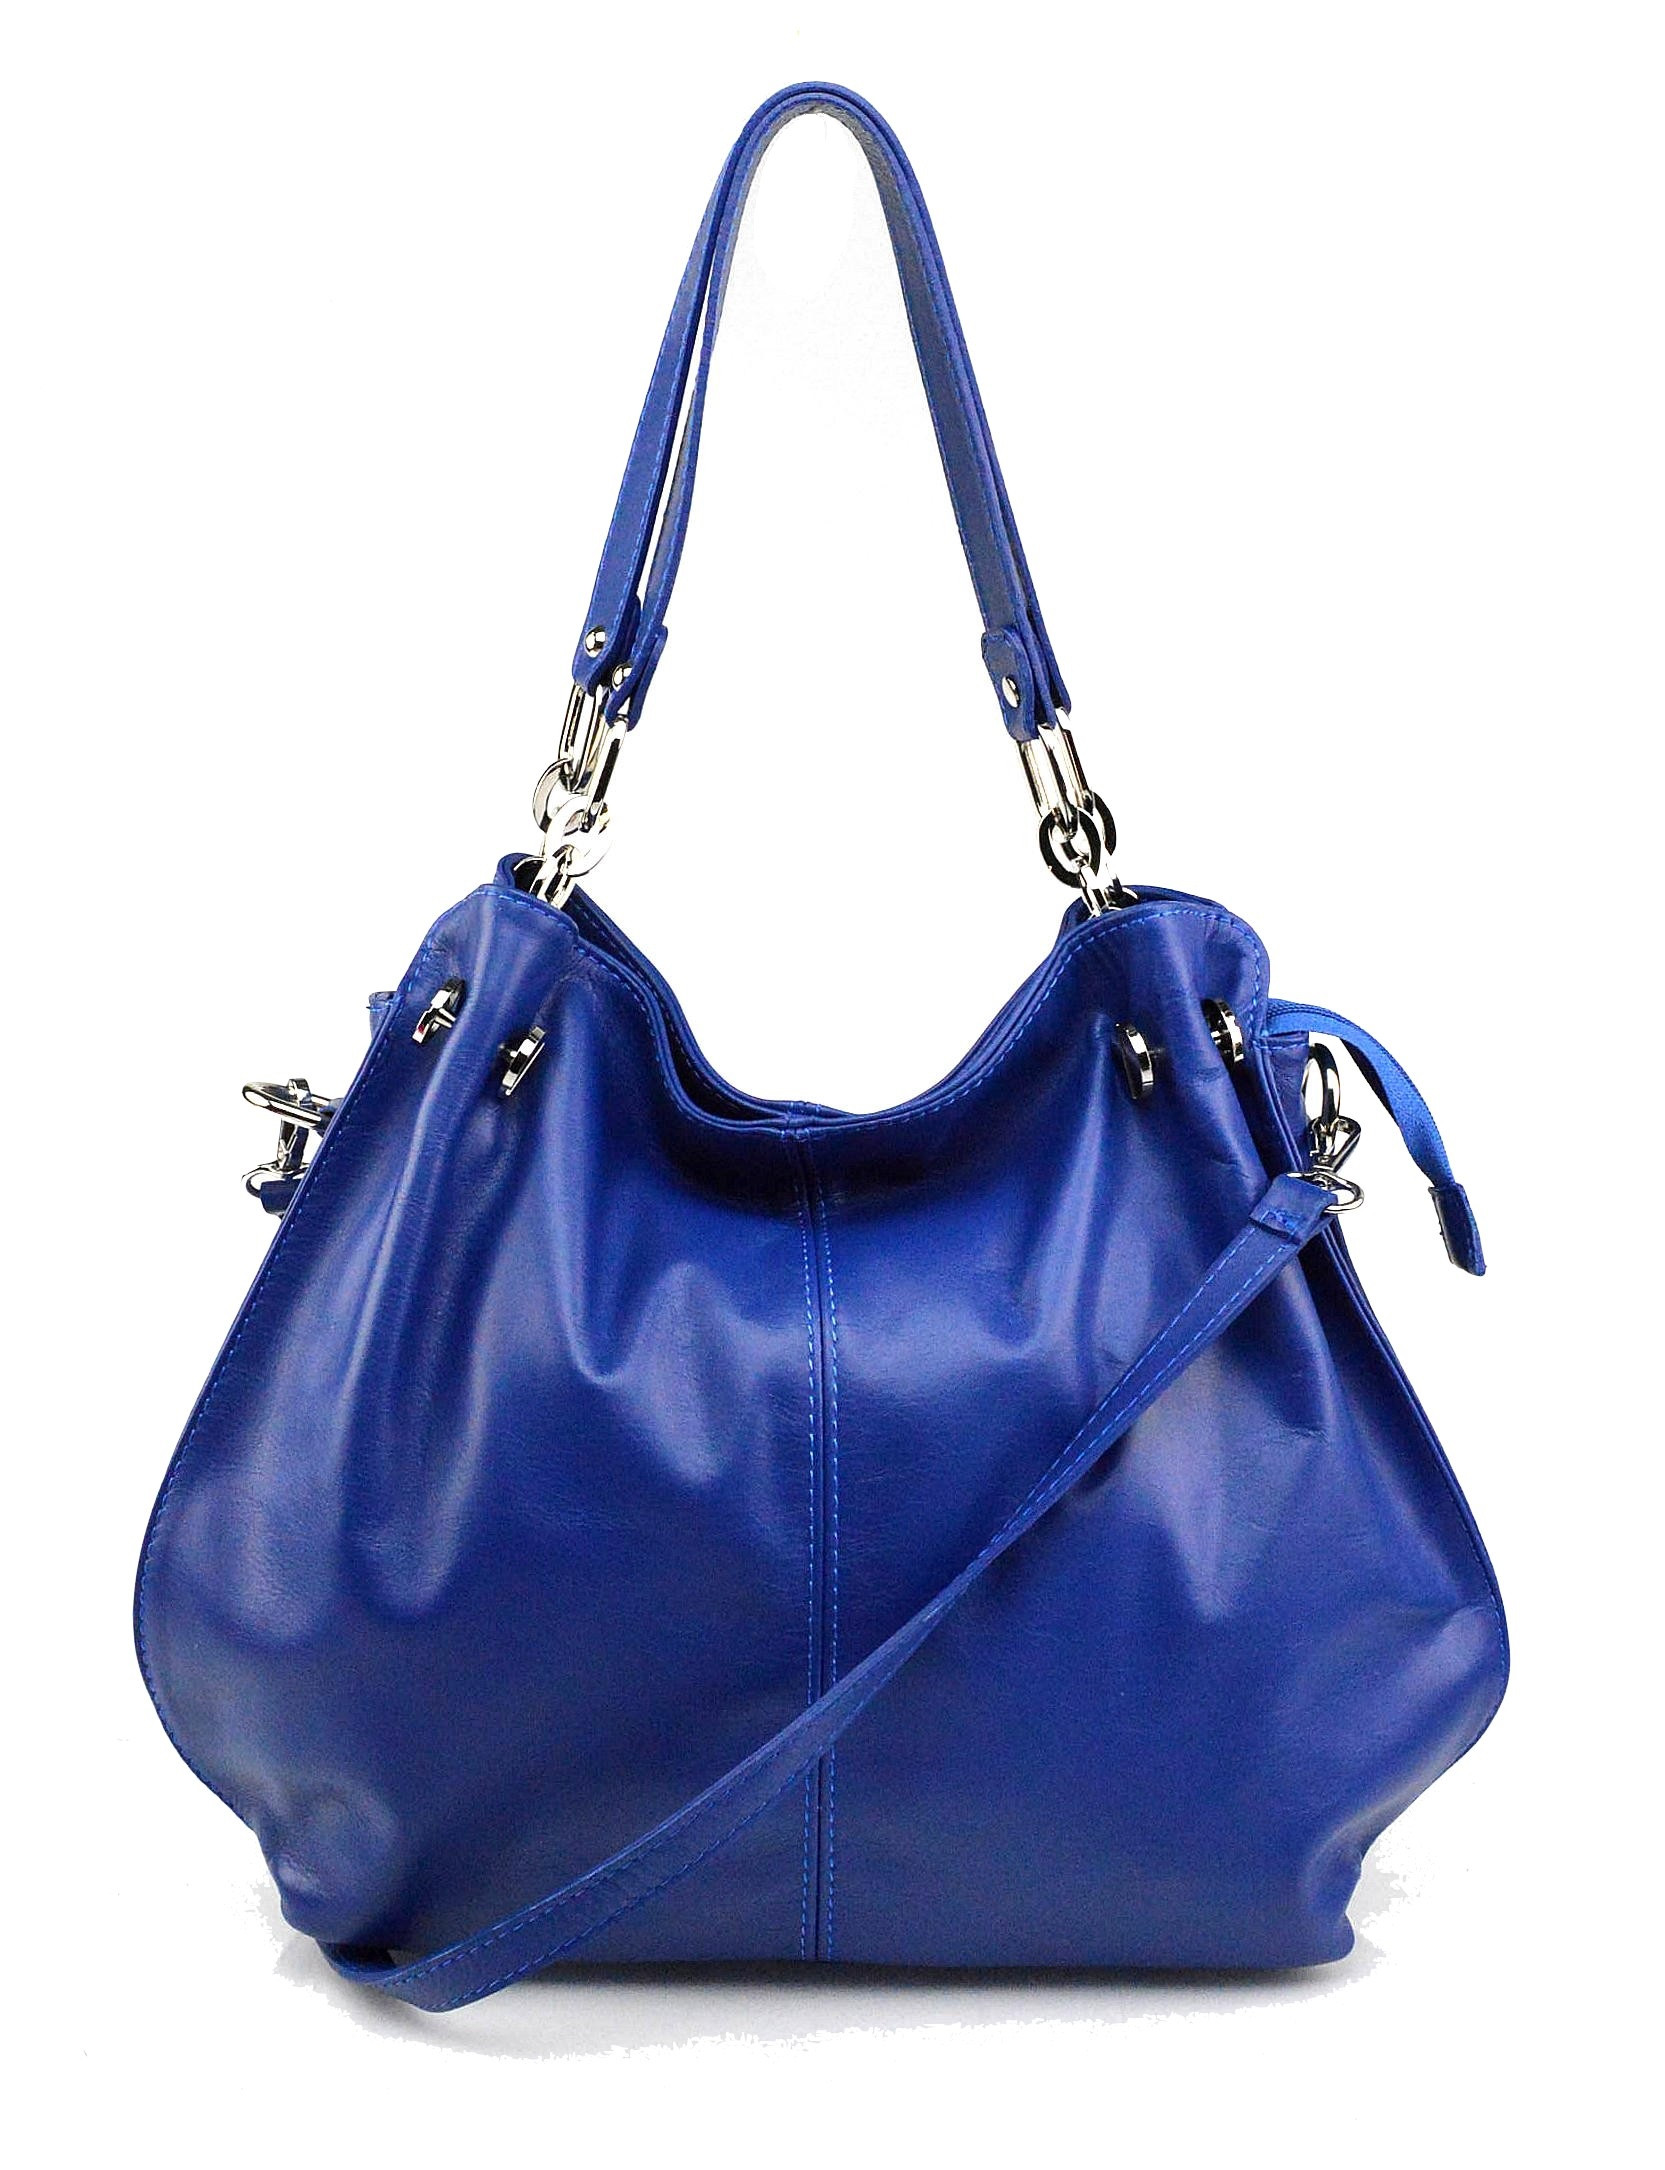 Jedinečná luxusní sytě modrá kožená kabelka přes rameno Lorreine